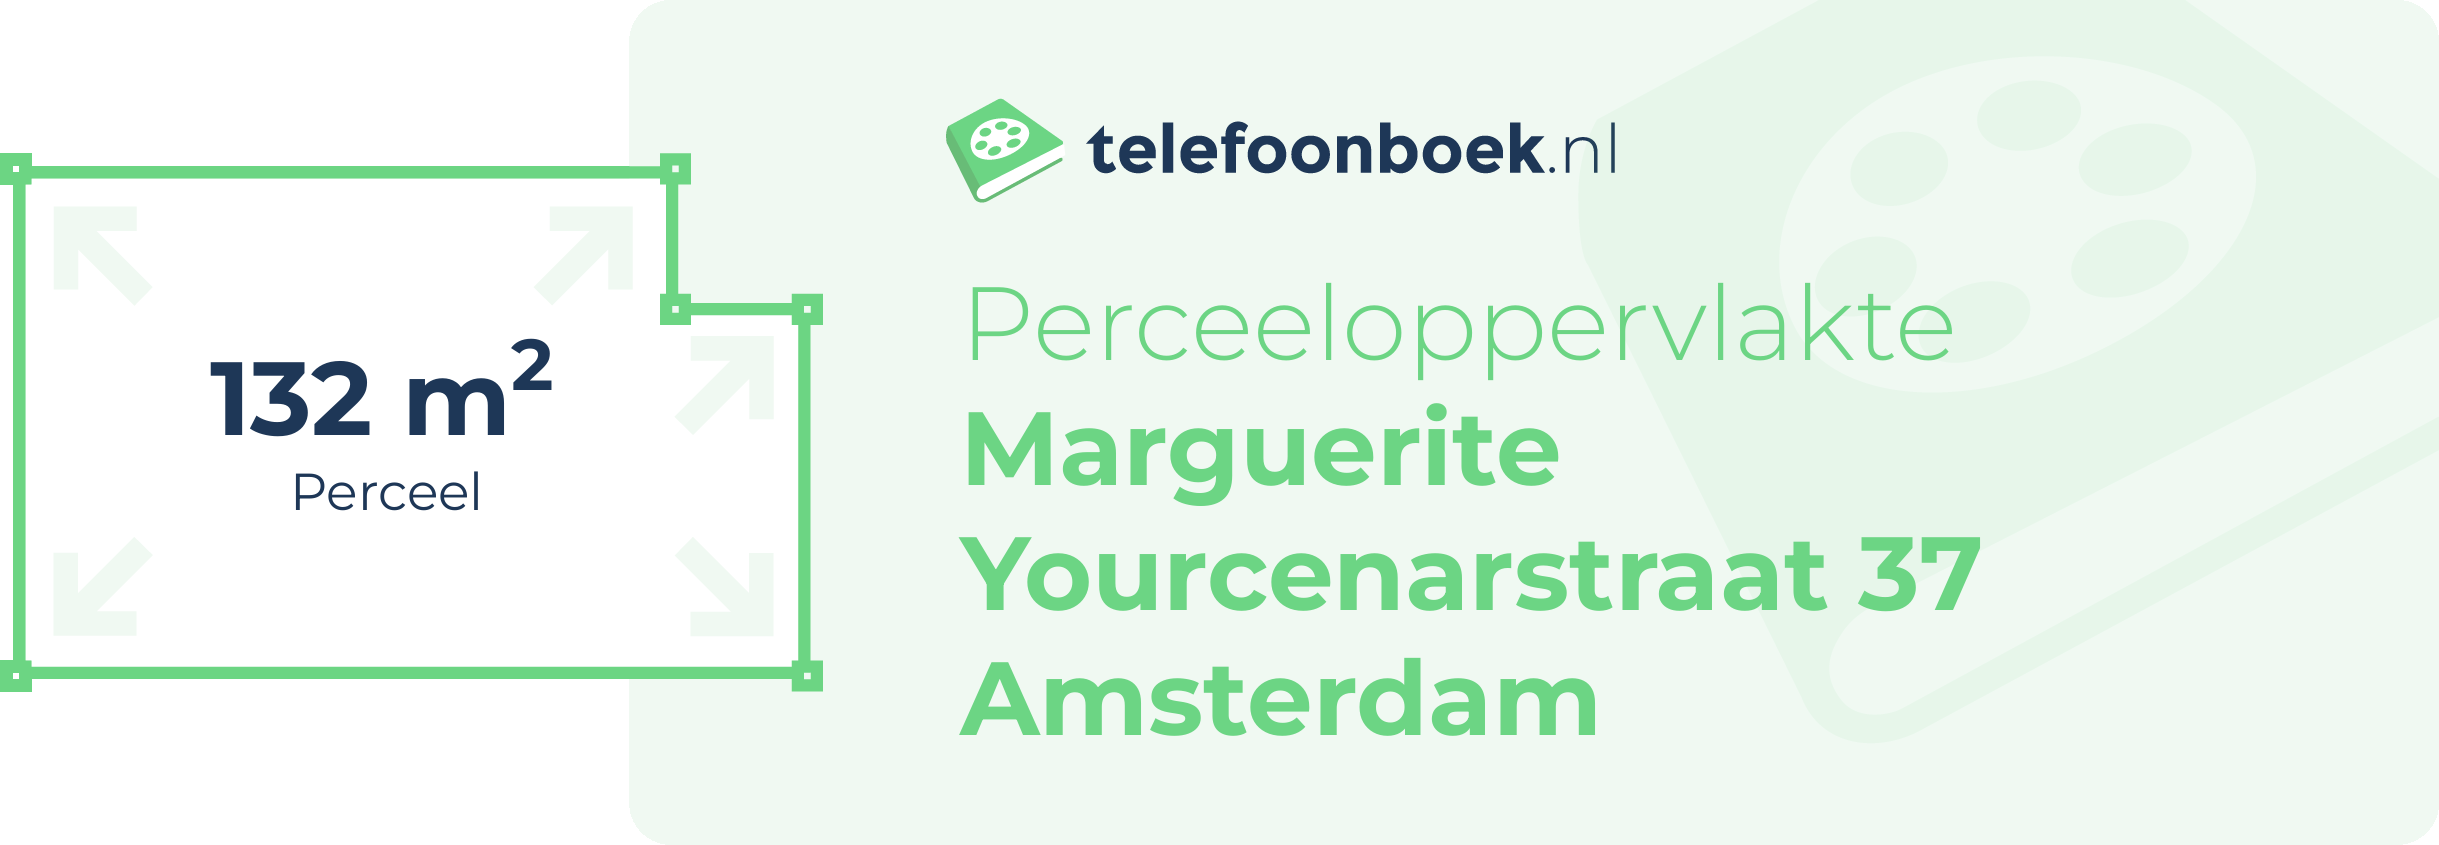 Perceeloppervlakte Marguerite Yourcenarstraat 37 Amsterdam